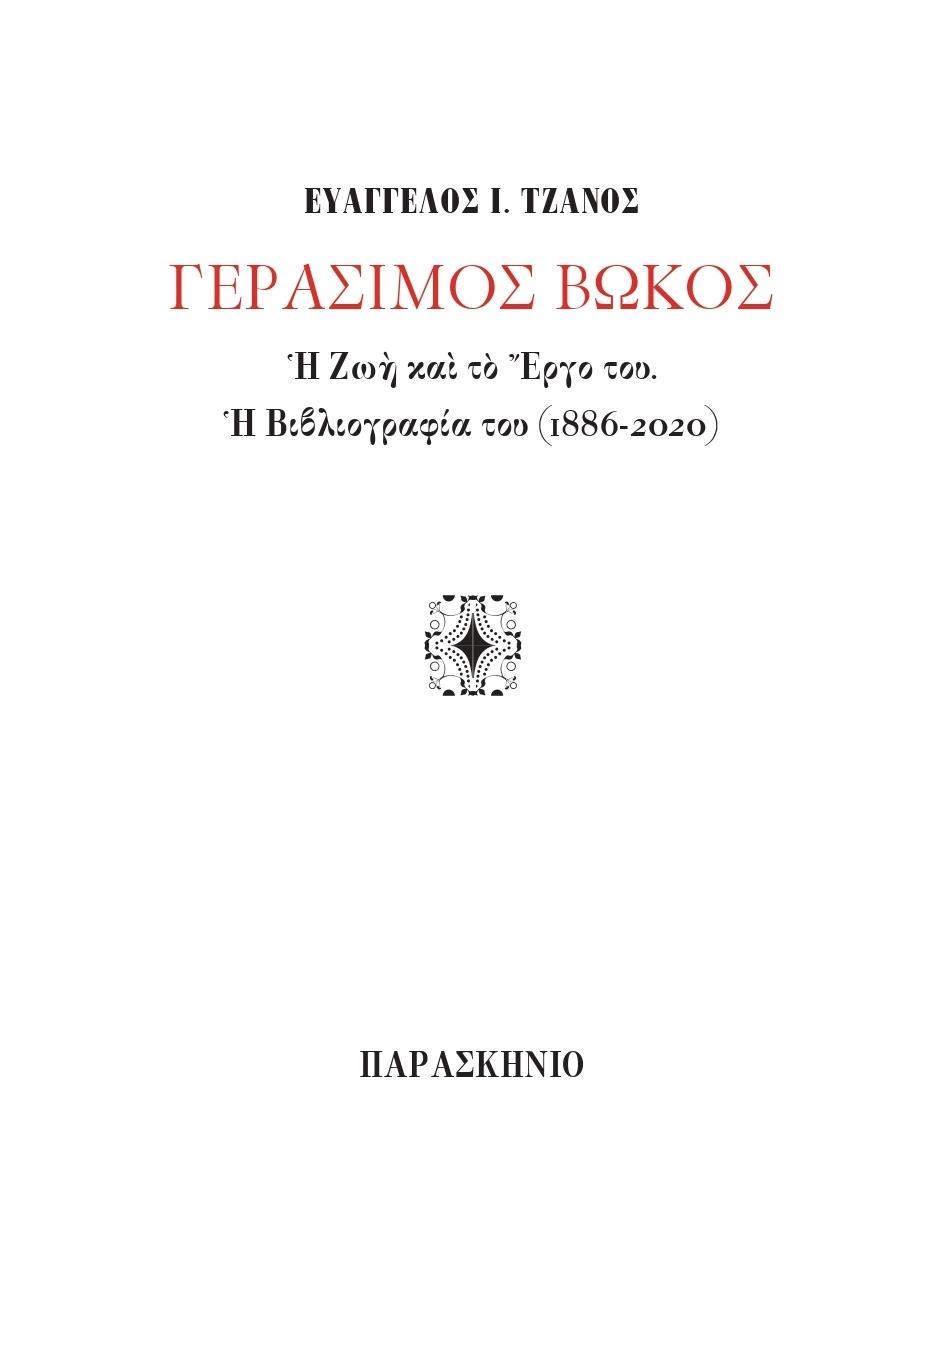 ΓΕΡΑΣΙΜΟΣ ΒΩΚΟΣ (No 17)